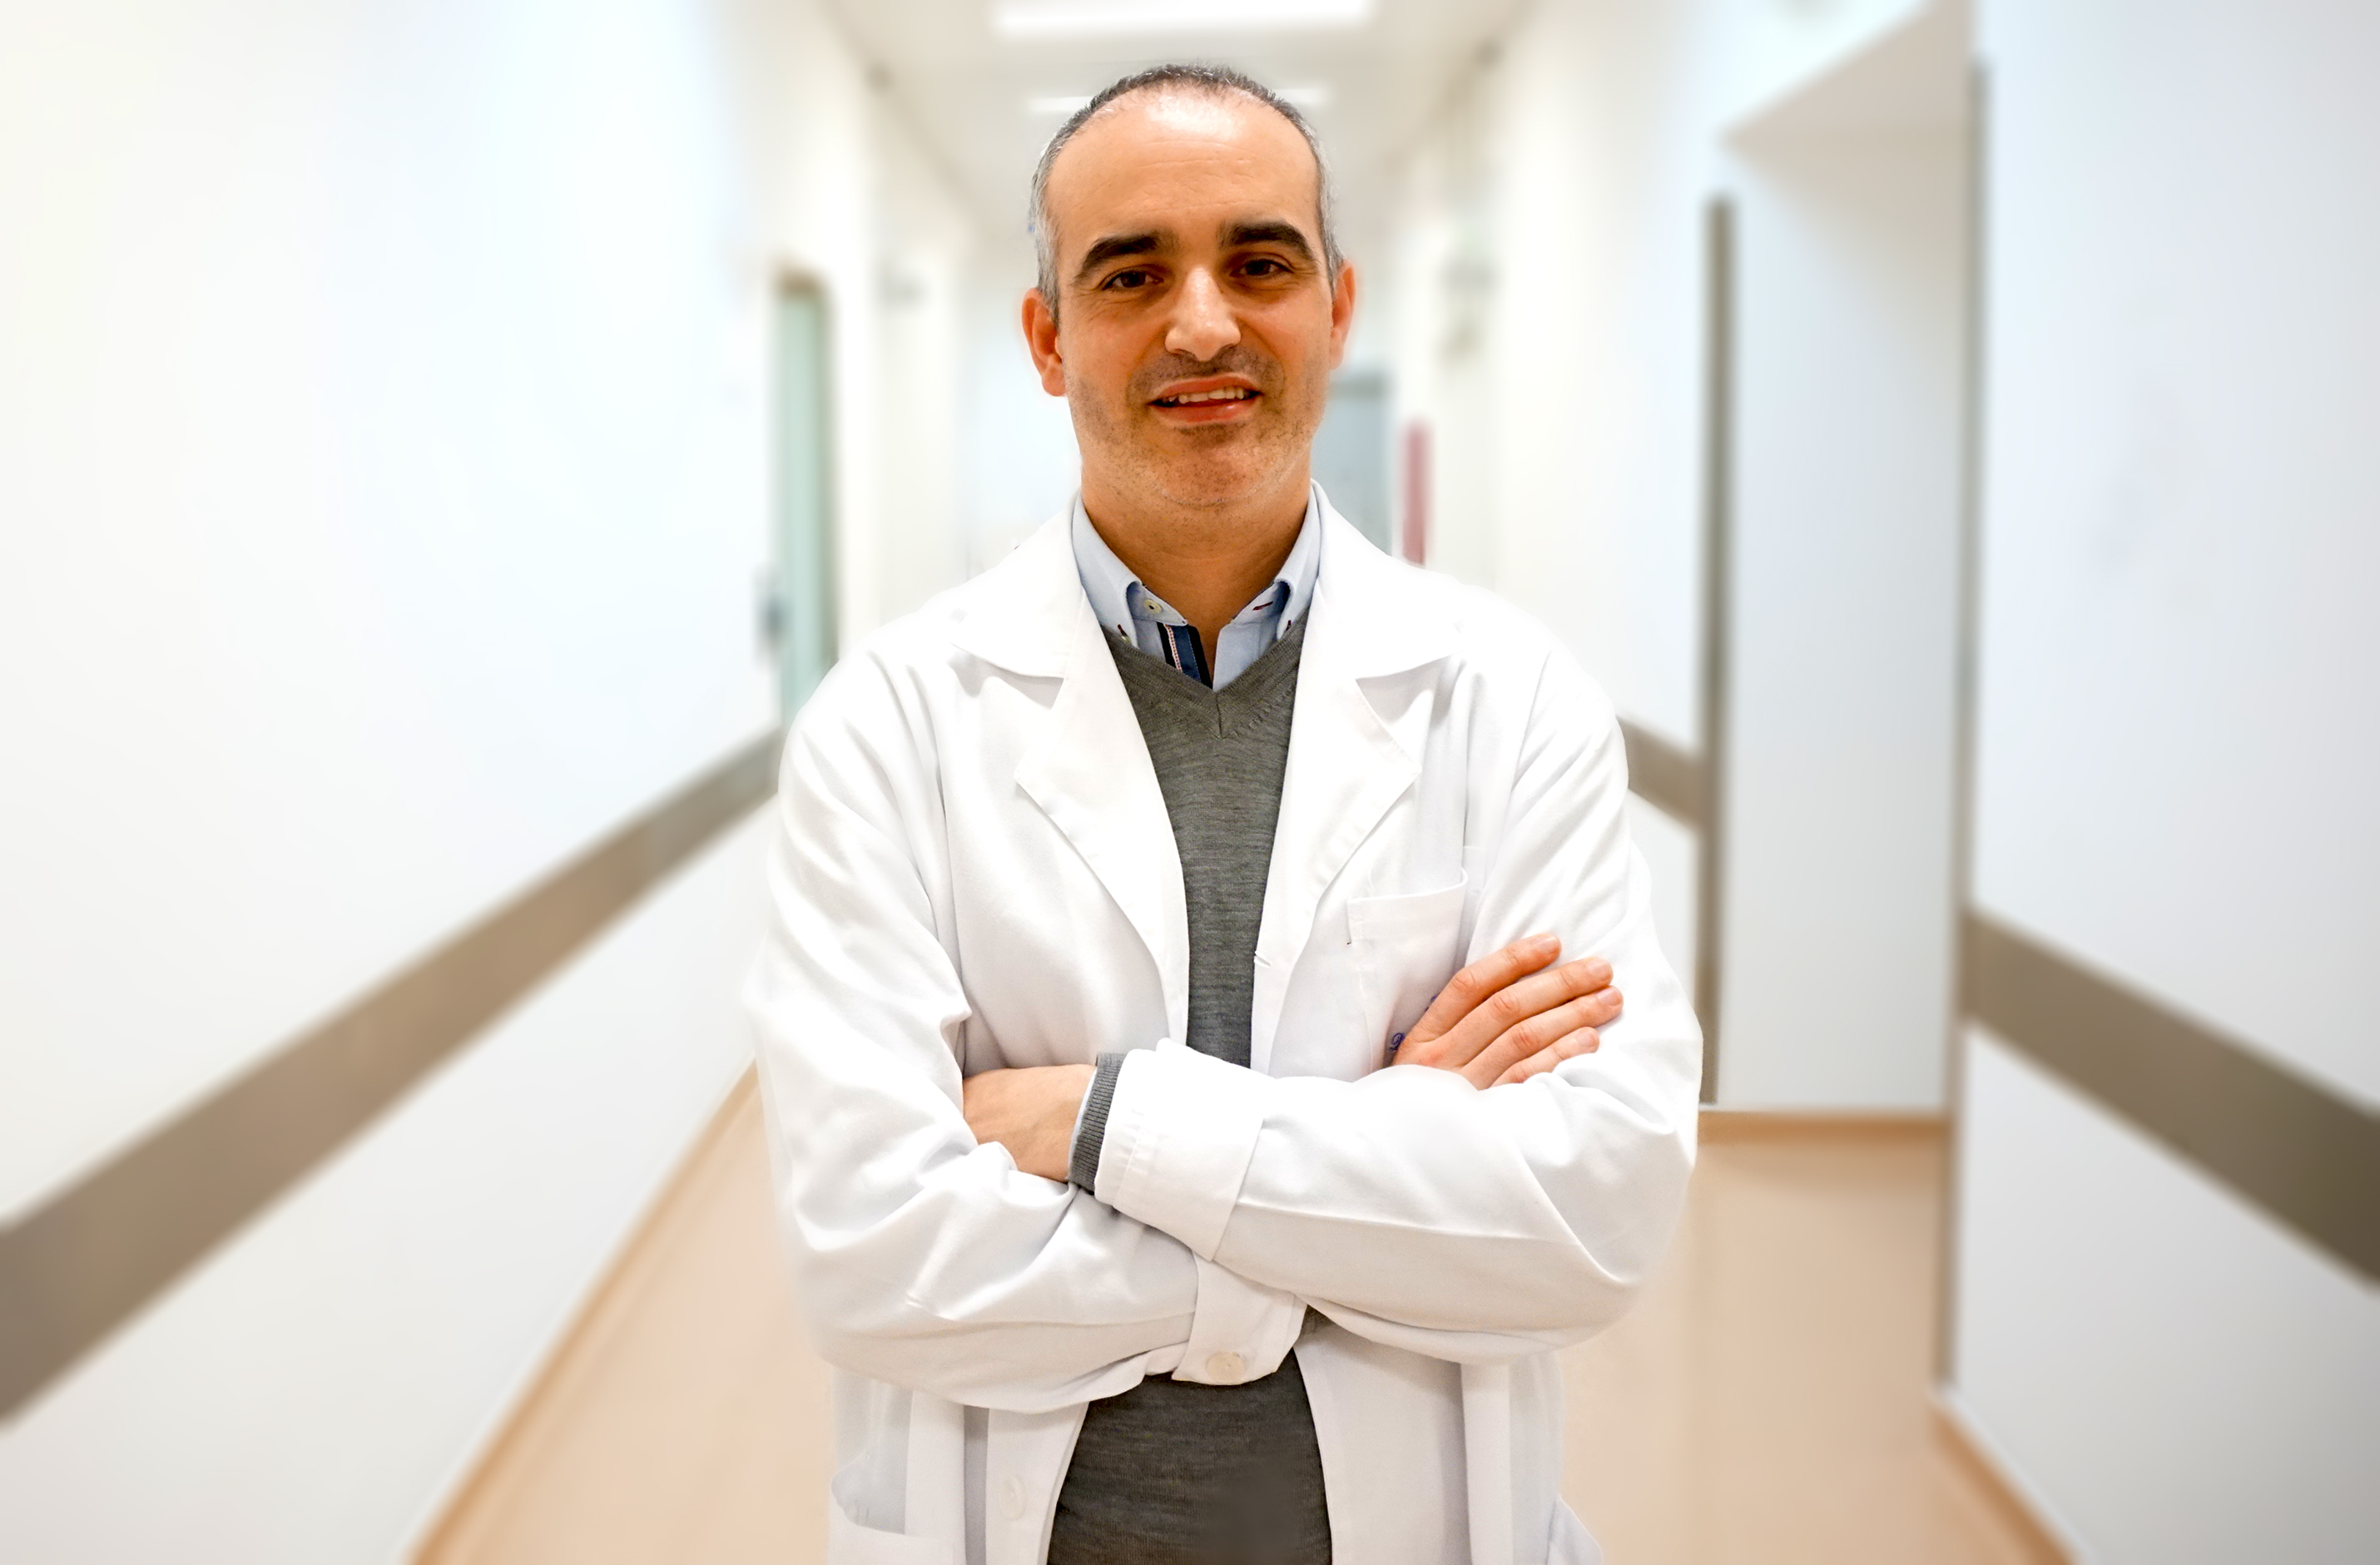 Artigo de opinião do Dr. Filipe Mira - Especialista em Oftalmologia